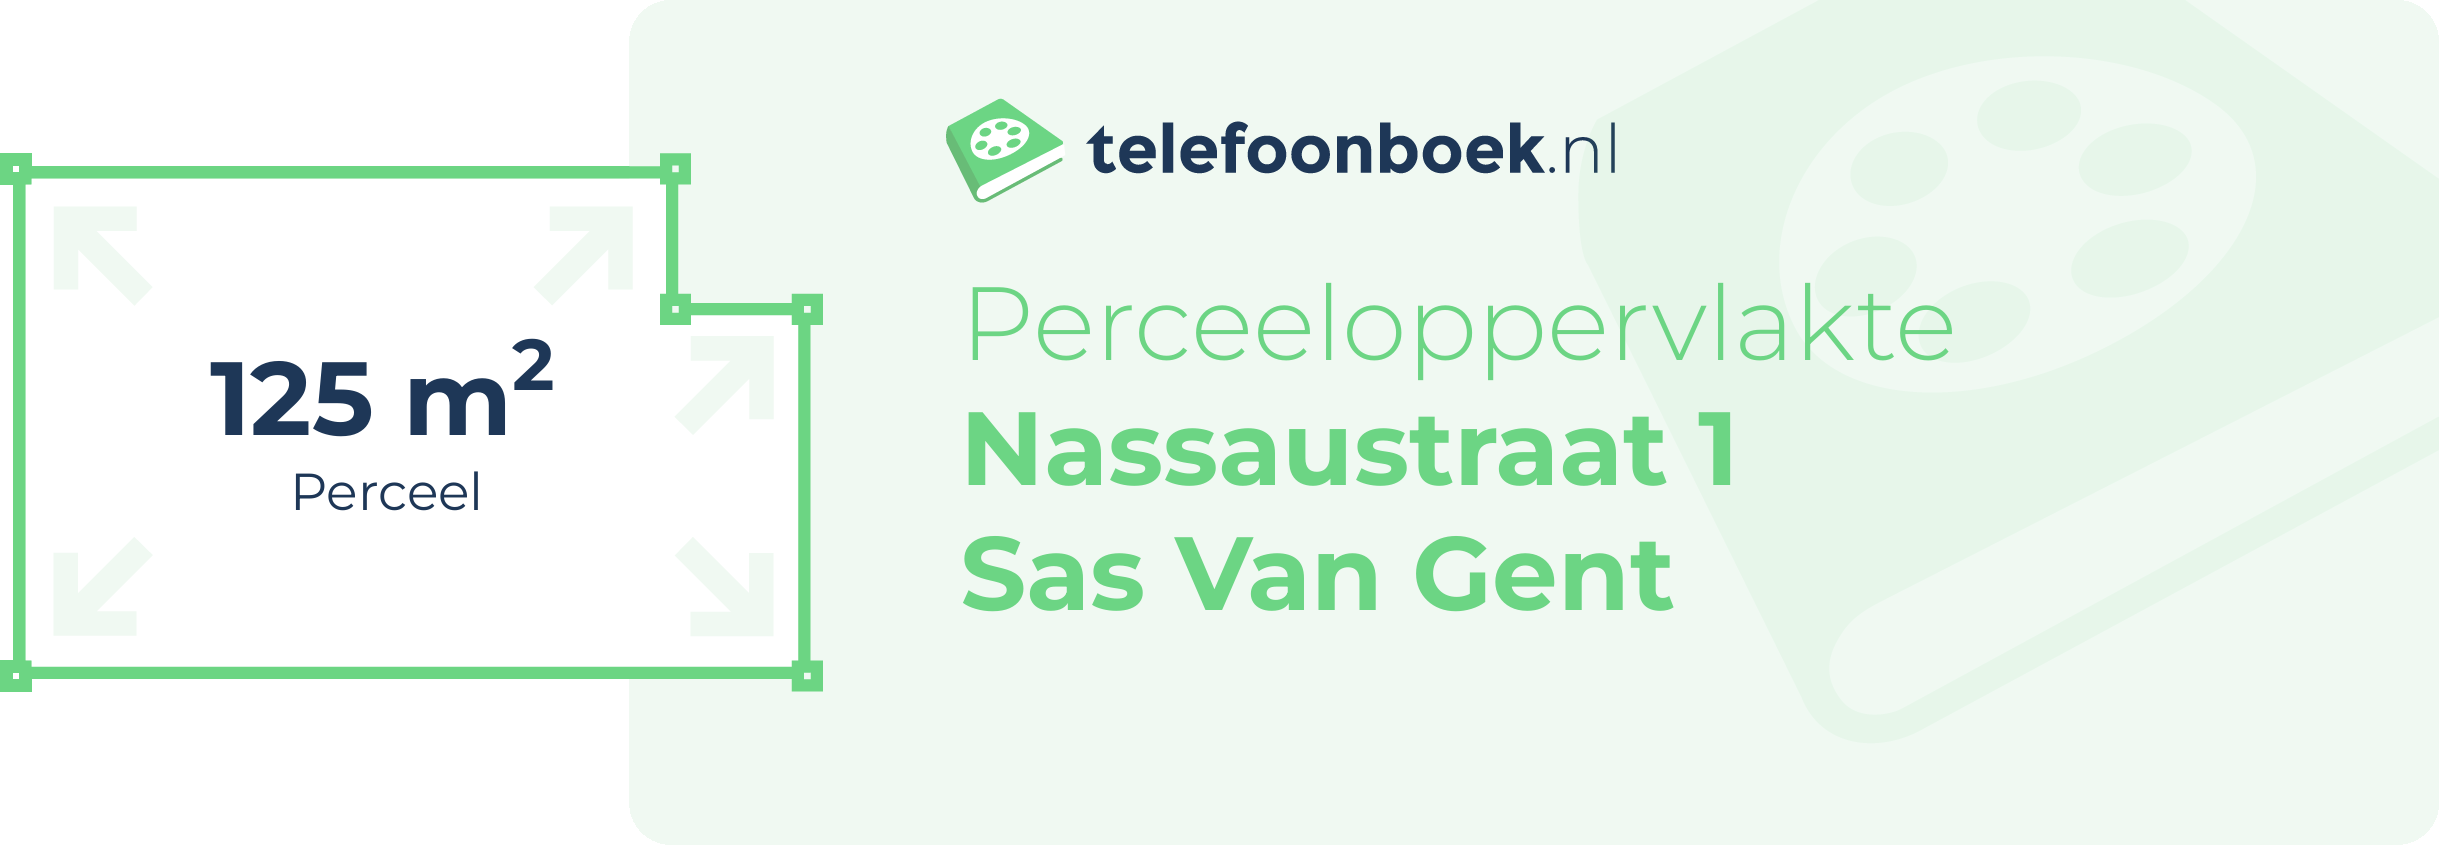 Perceeloppervlakte Nassaustraat 1 Sas Van Gent